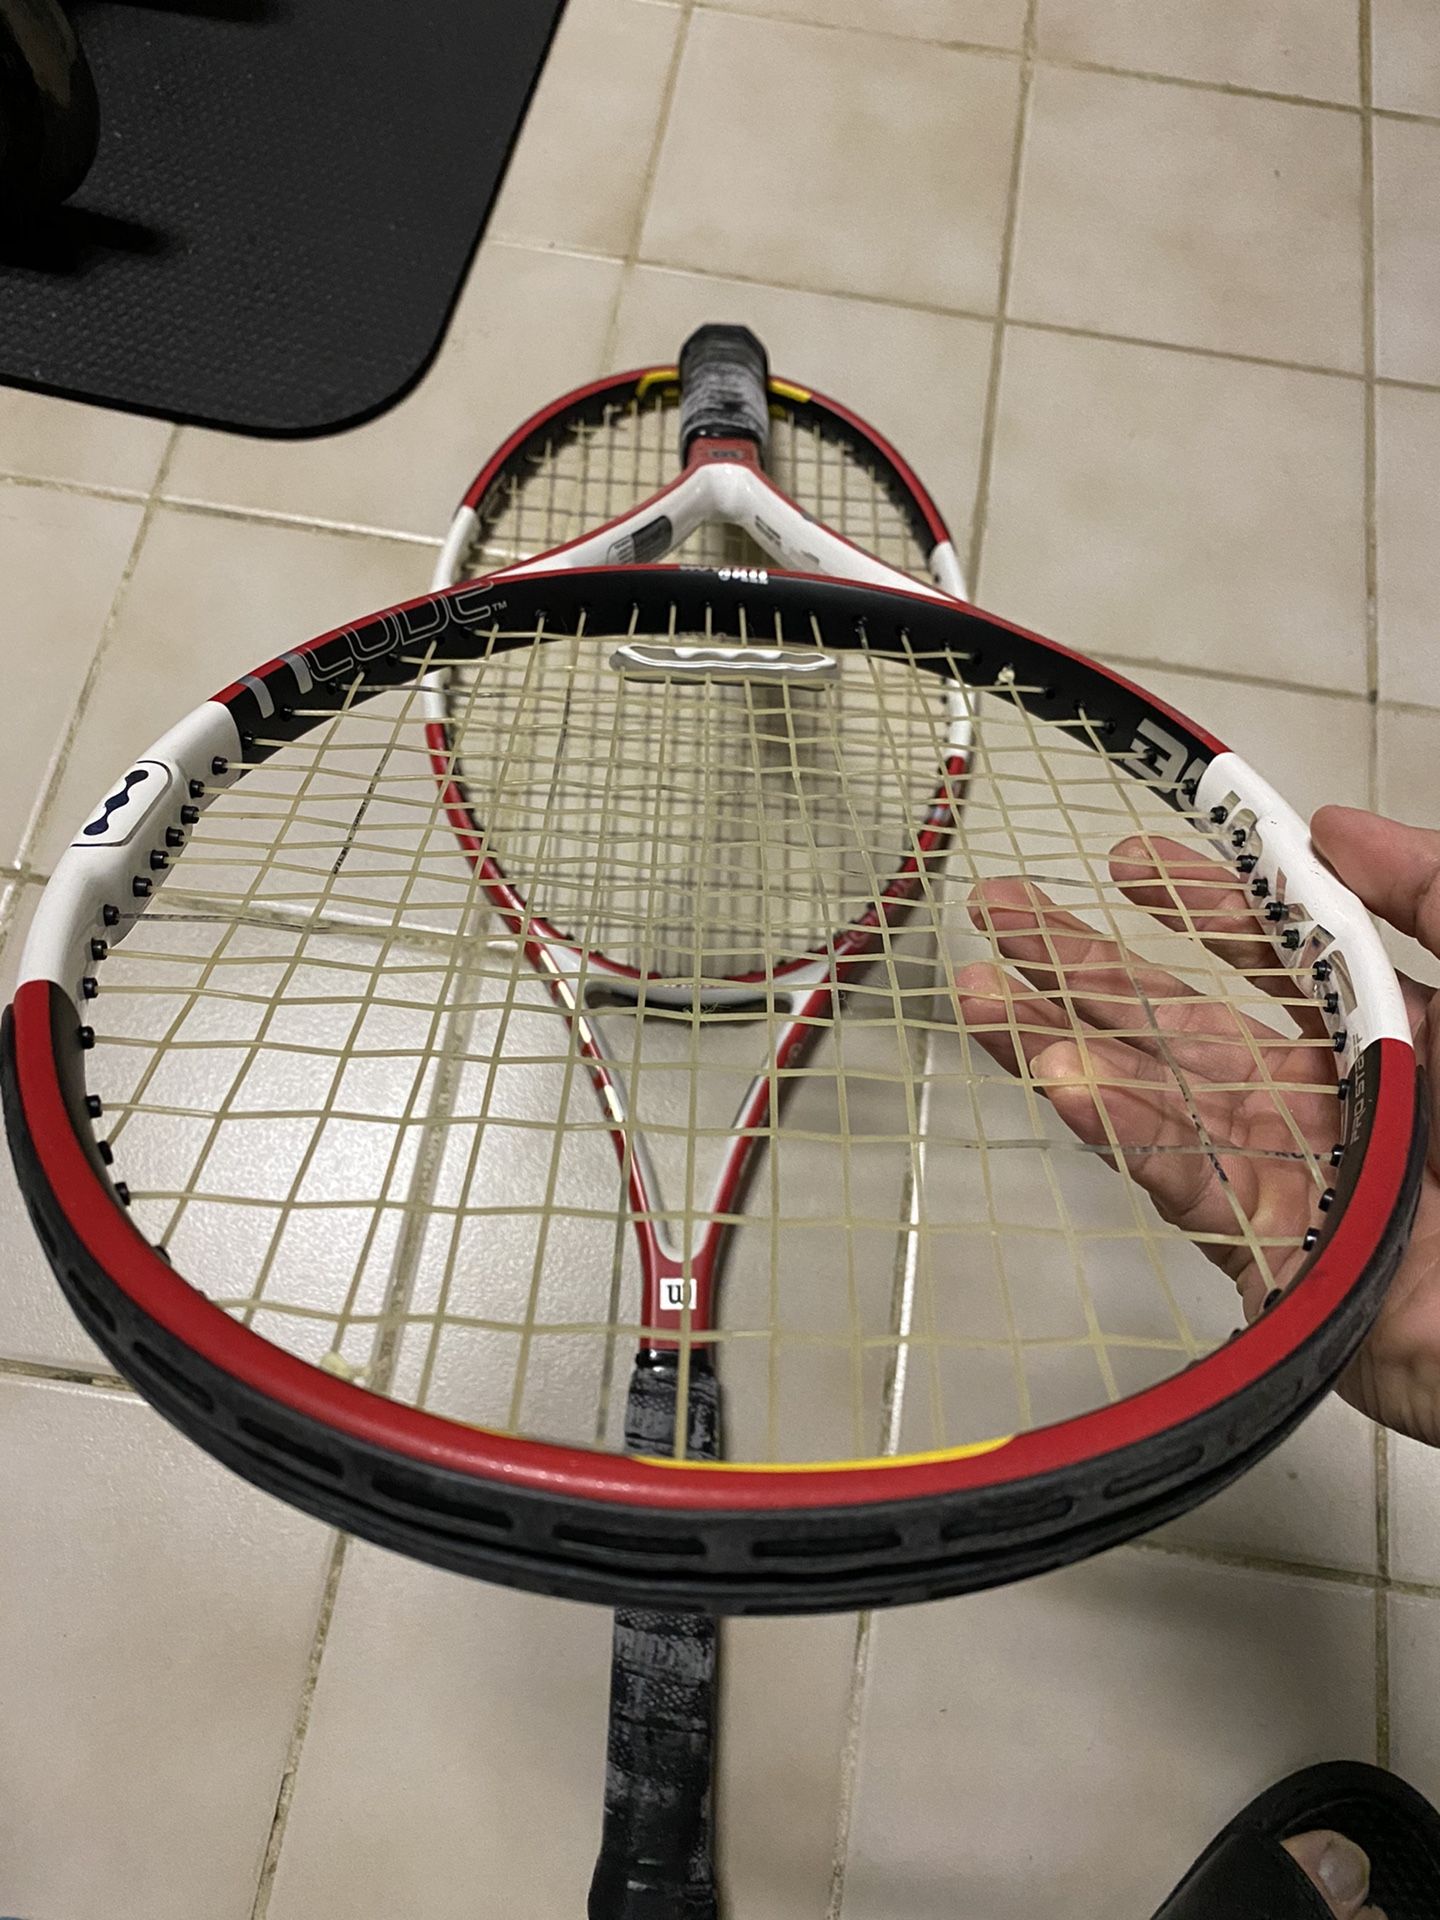 Tennis Wilson ncode 95